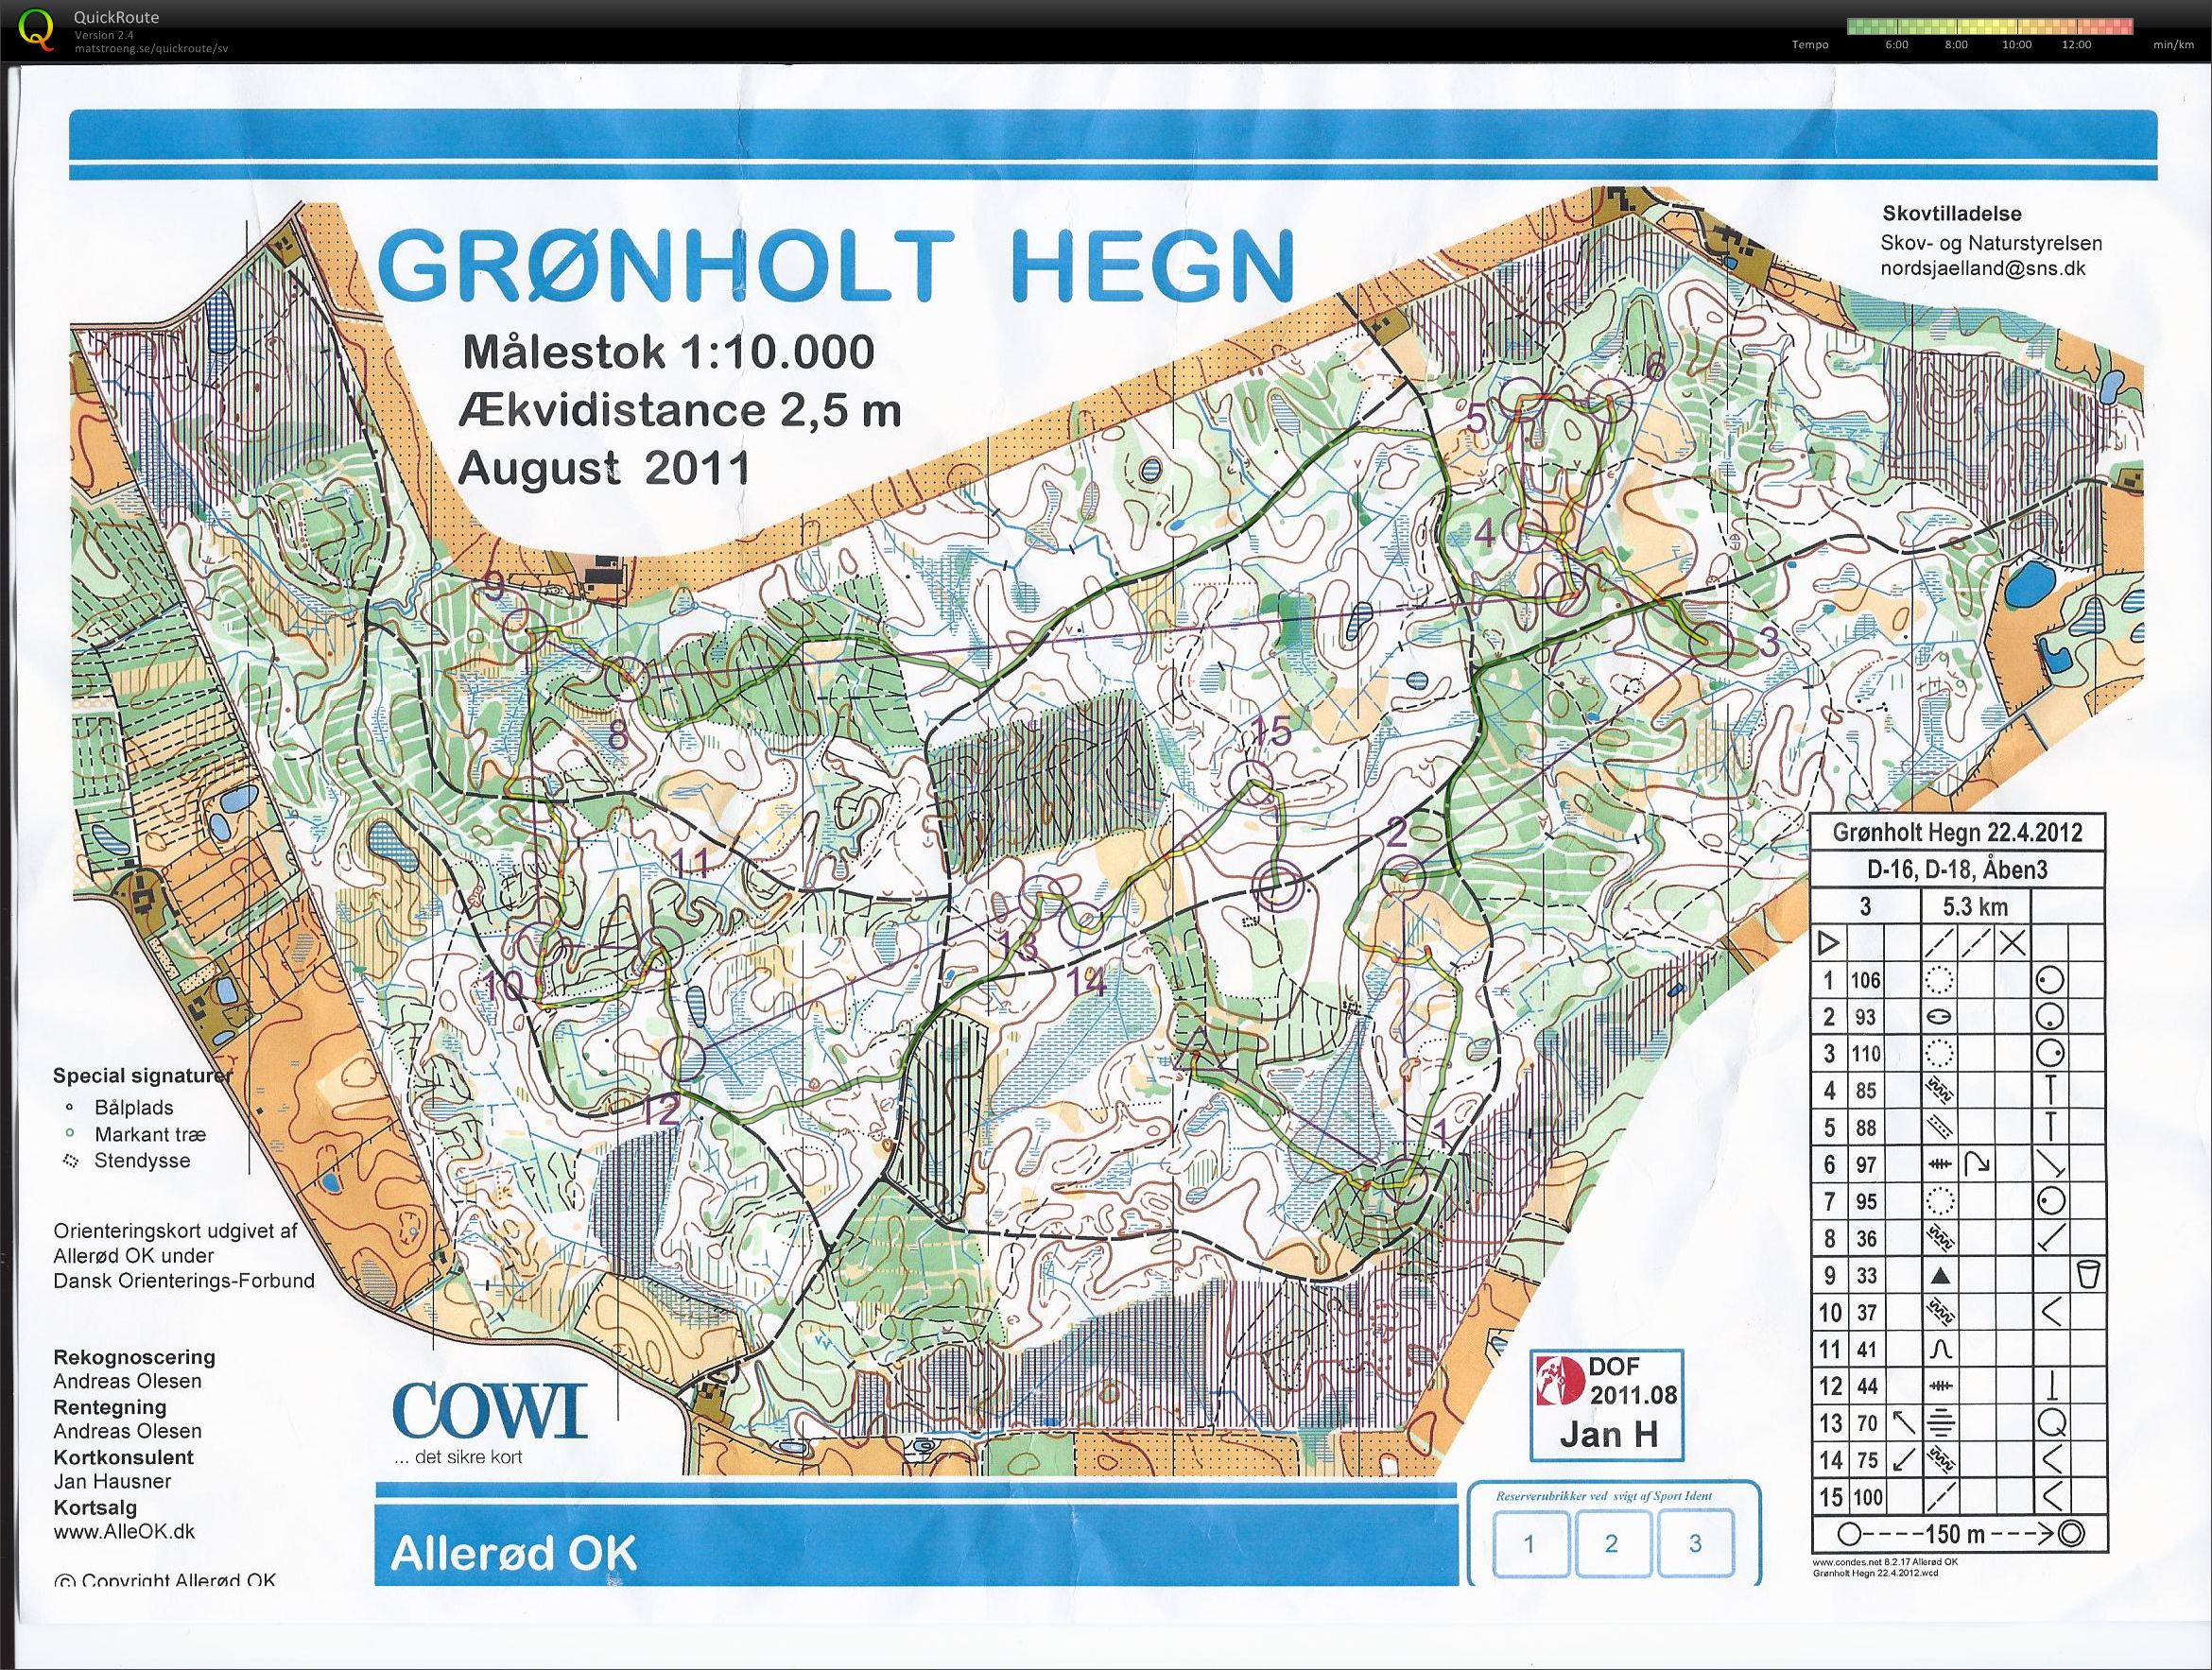 "Grønholt O-challenge" (22.04.2012)